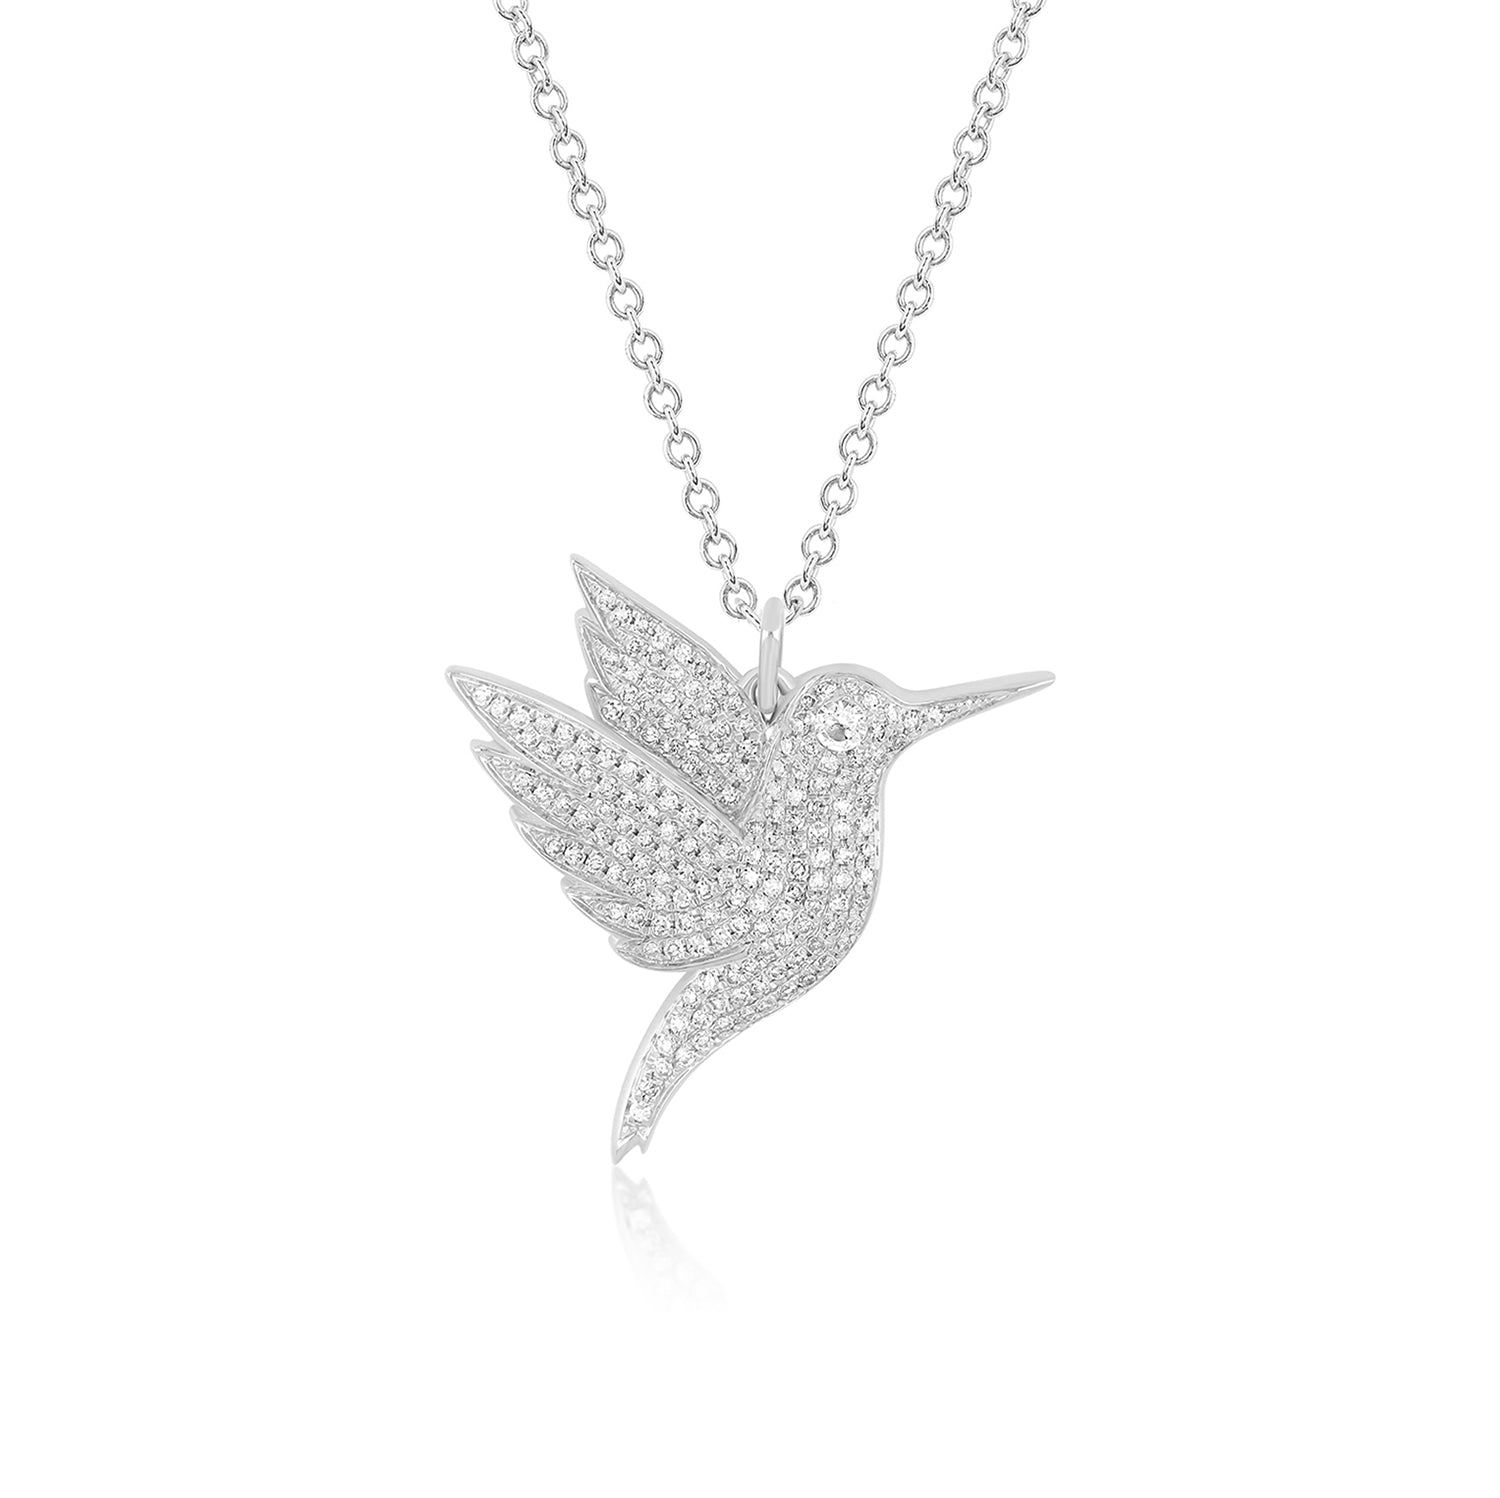 Pave Diamond Hummingbird Necklace with Diamond Eye